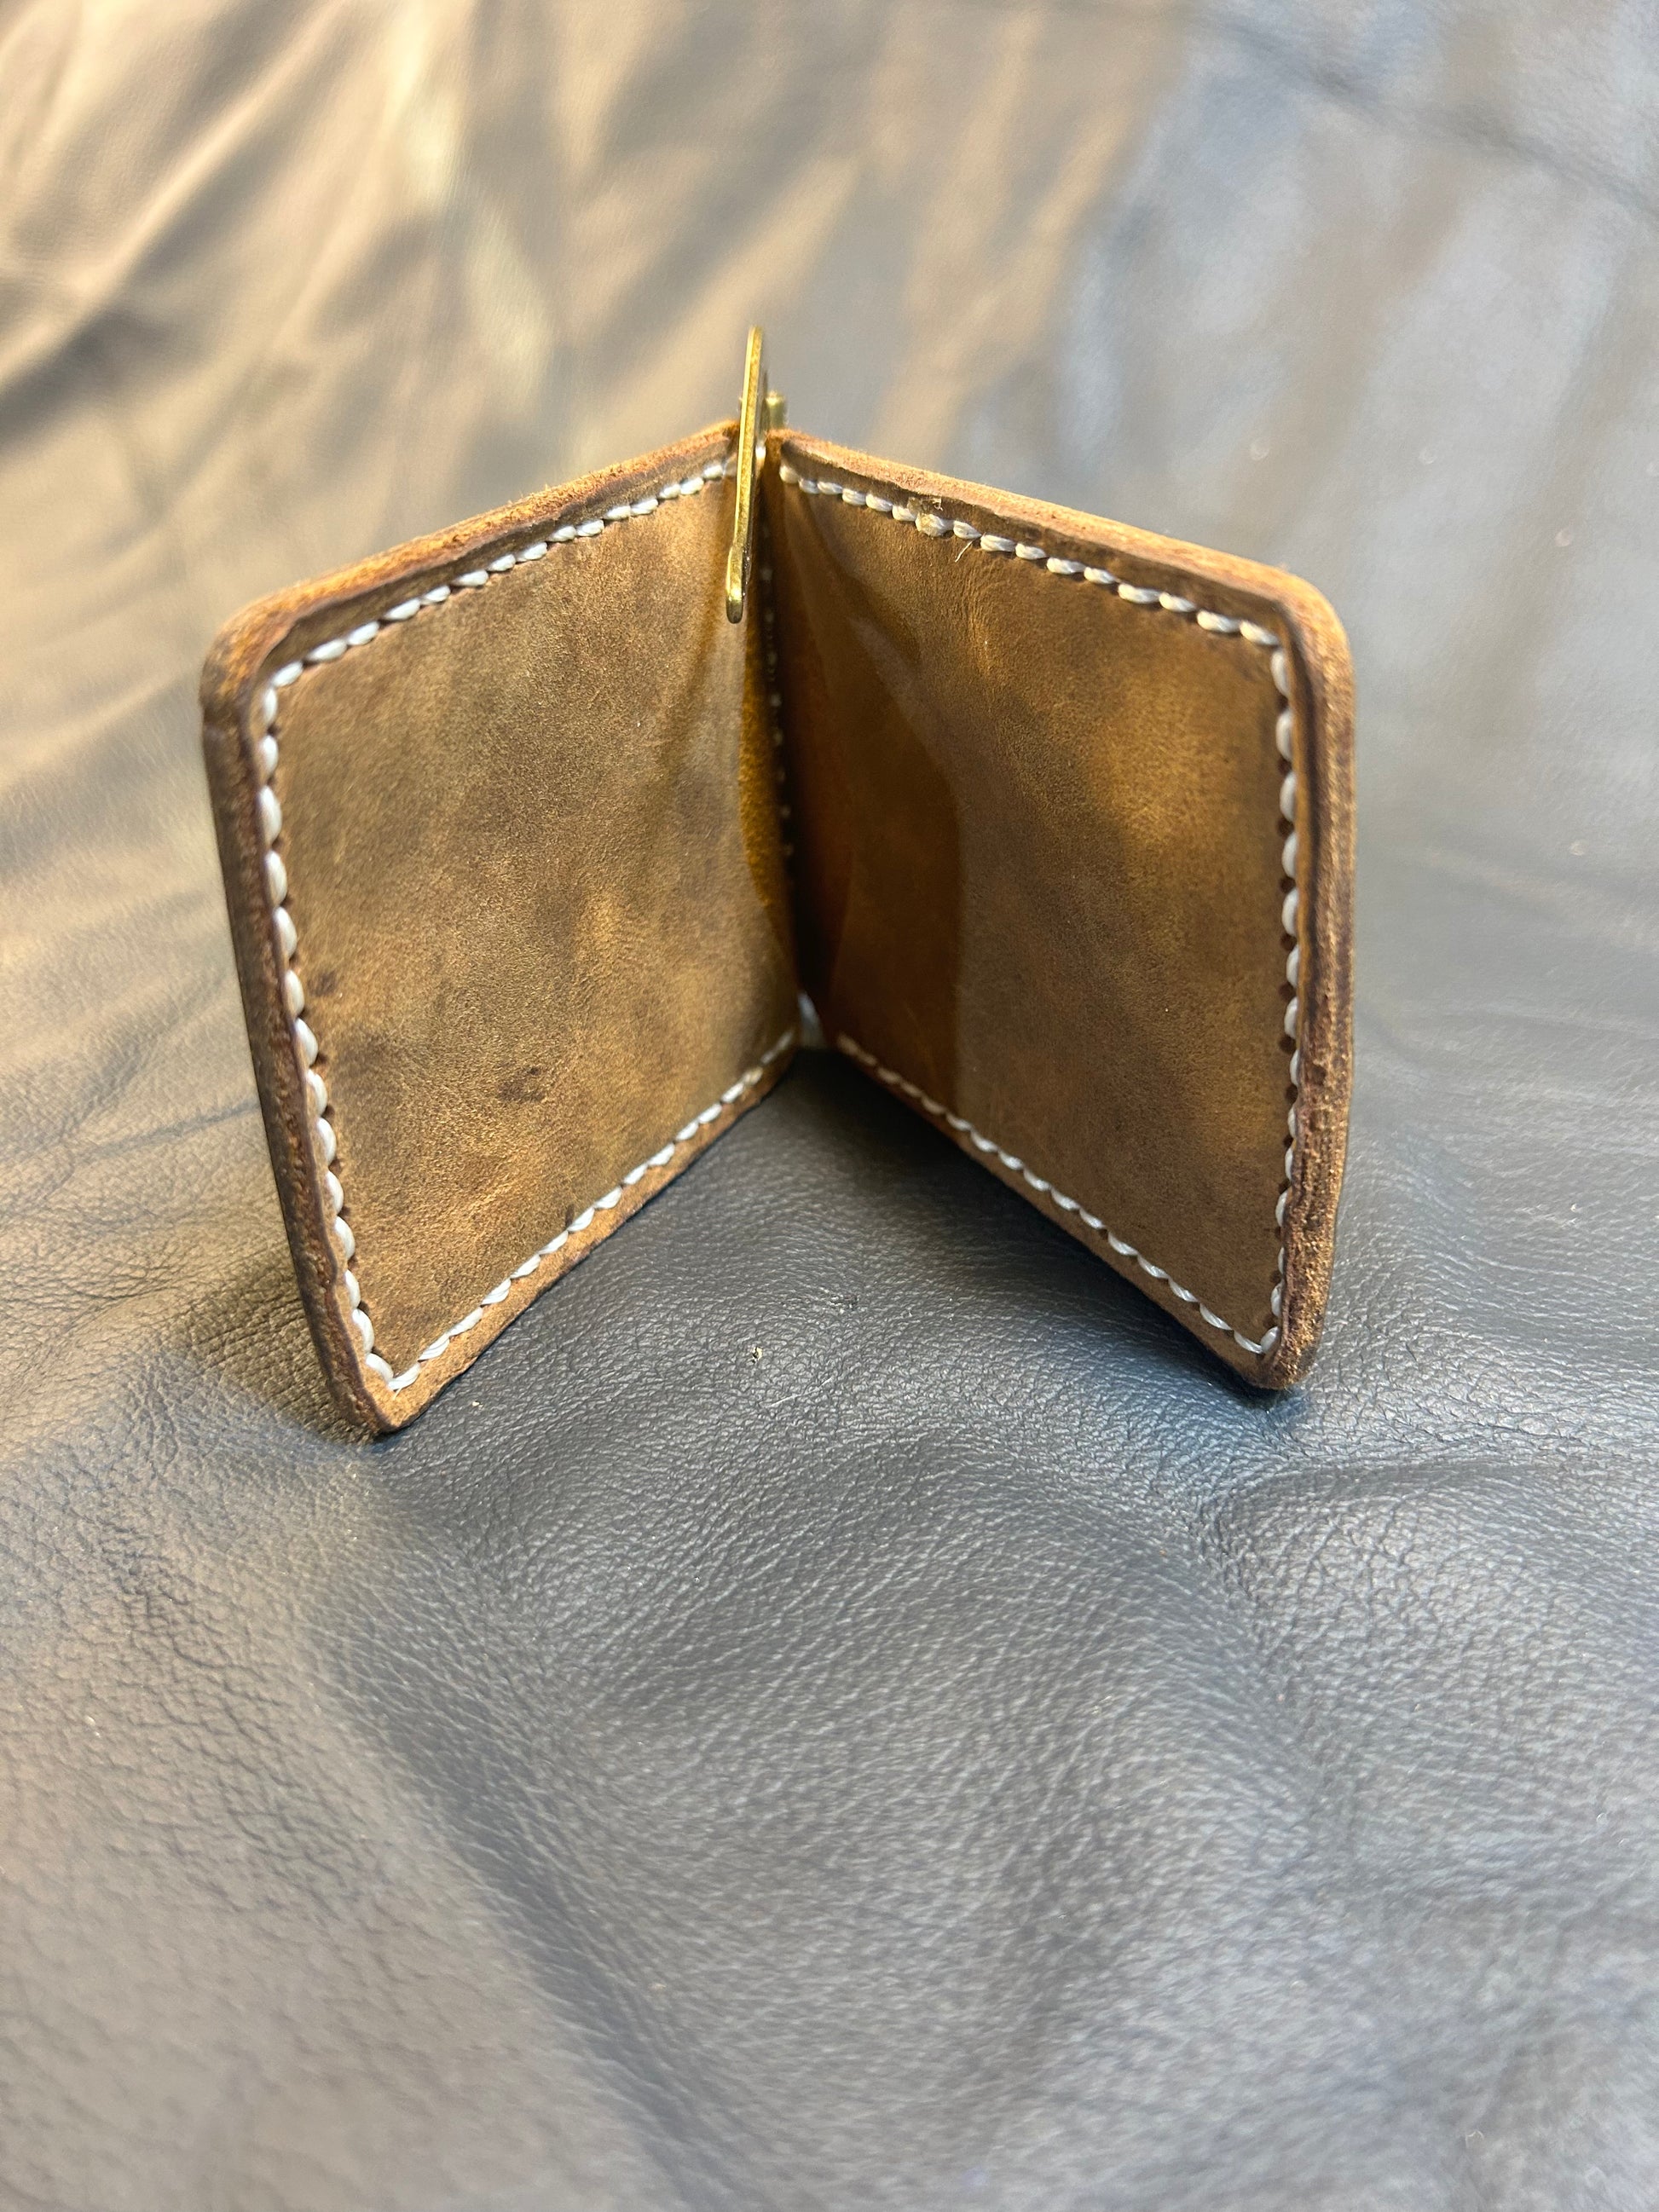 Bifold 2-4 pocket Leather Wallet inside